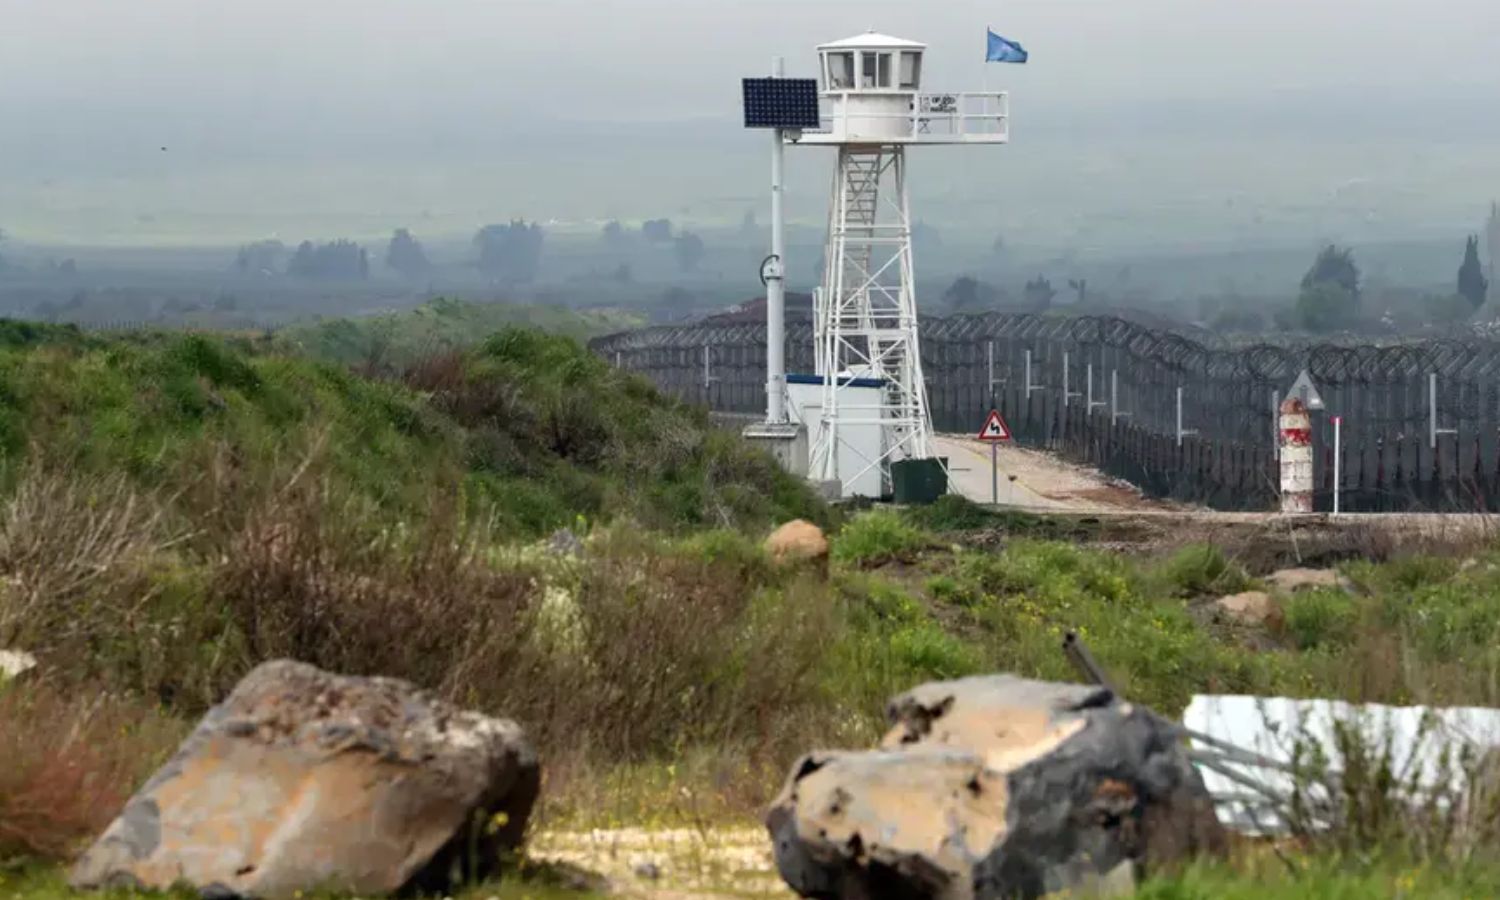 برج مراقبة تابع لقوات حفظ السلام التابعة للأمم المتحدة بجوار معبر القنيطرة الحدودي بالقرب من خط وقف إطلاق النار بين إسرائيل وسوريا في مرتفعات الجولان السوري المحتل- 25 آذار 2019 (رويترز)